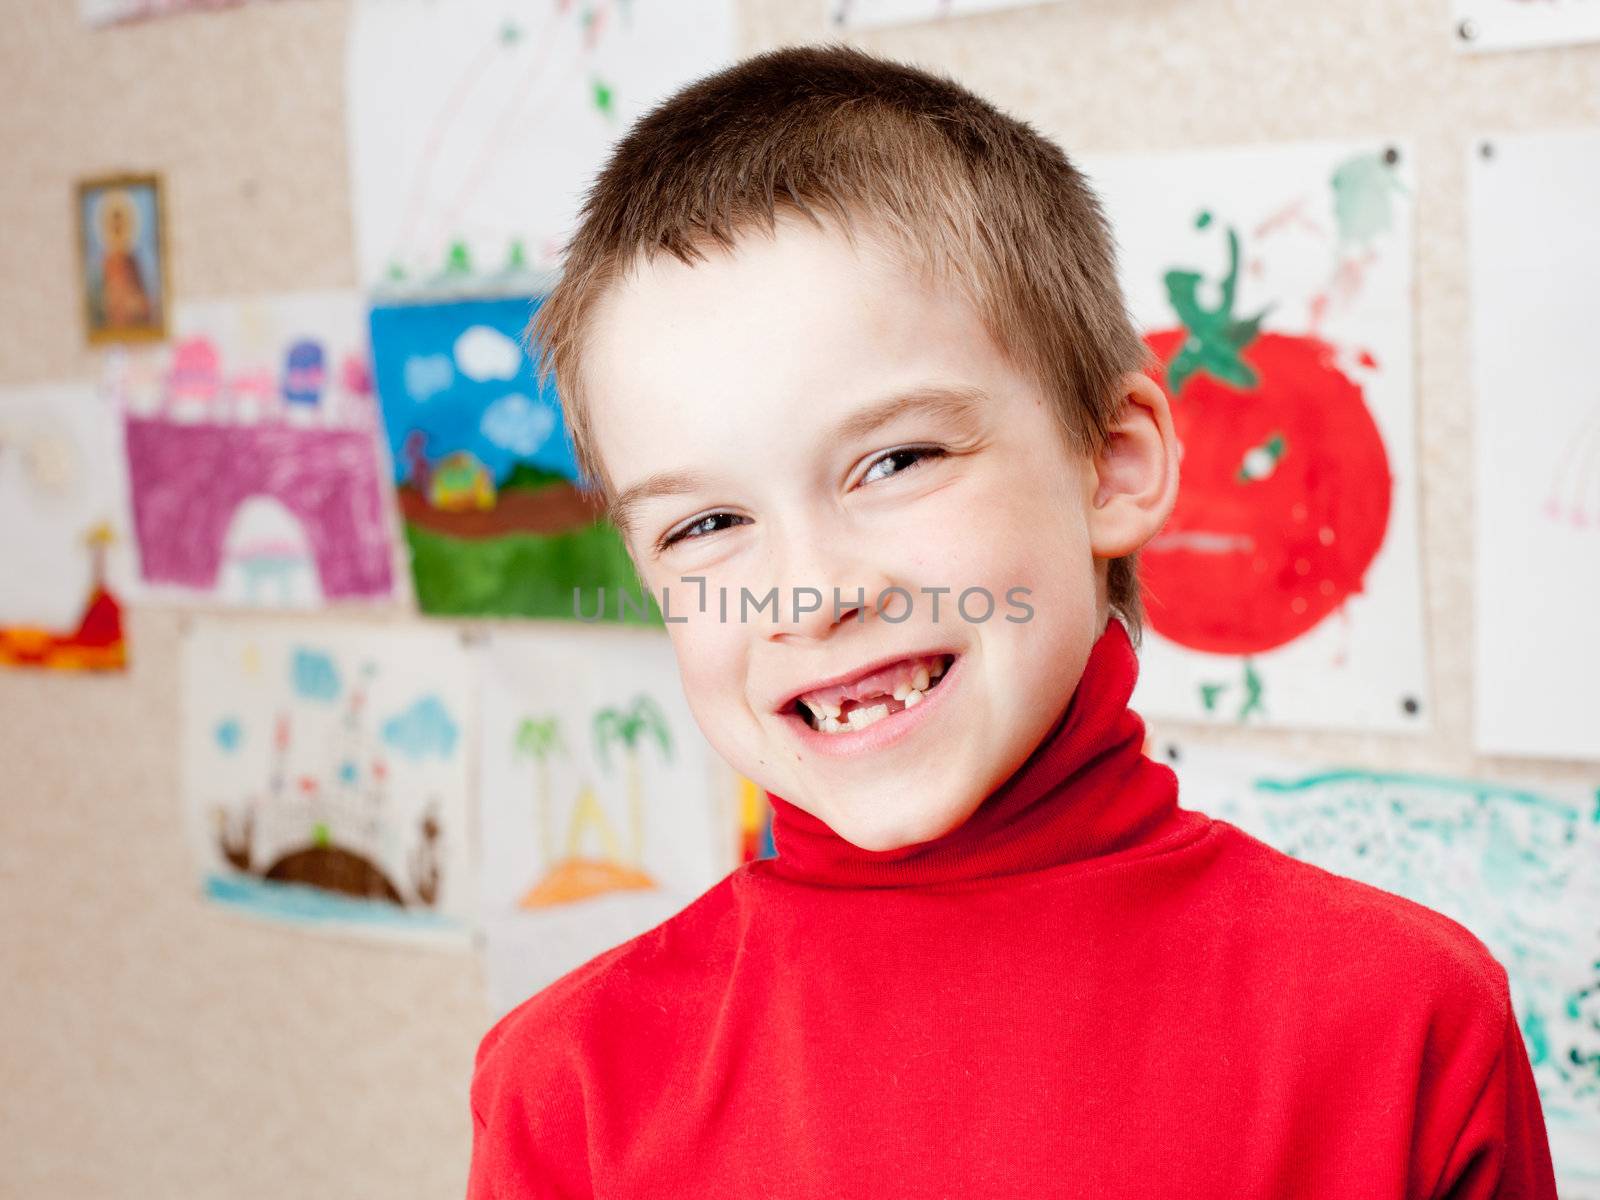 Boy shows missing teeth by naumoid